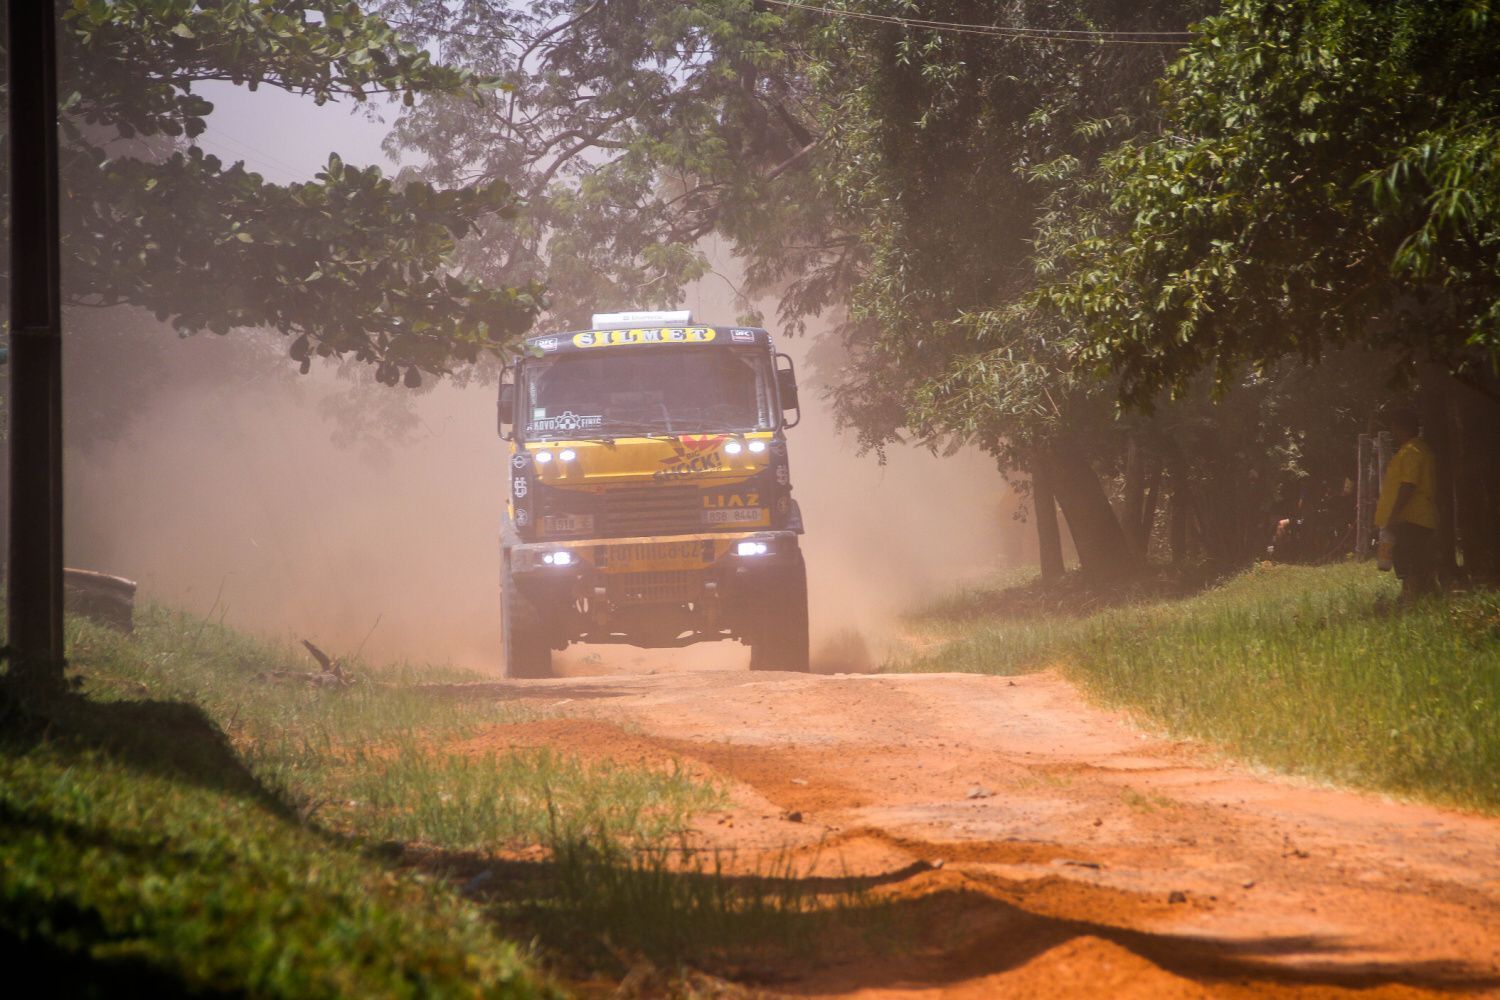 Rallye Dakar, 11. etapa: Martin Macík mladší, LIAZ